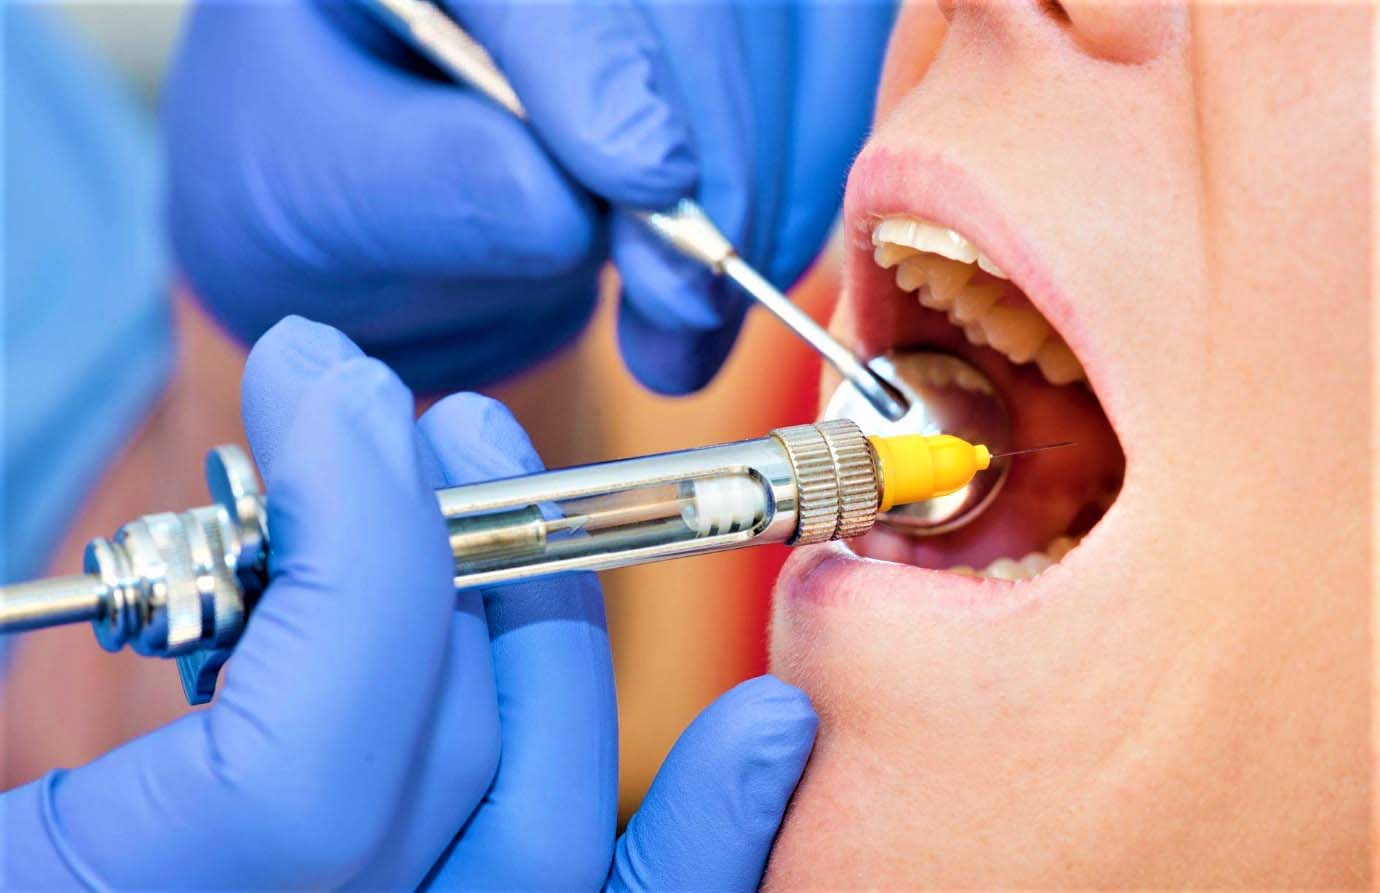 Ответы к тестам НМО: "Выбор местного обезболивания у пациентов с соматическими патологиями на стоматологическом приеме"